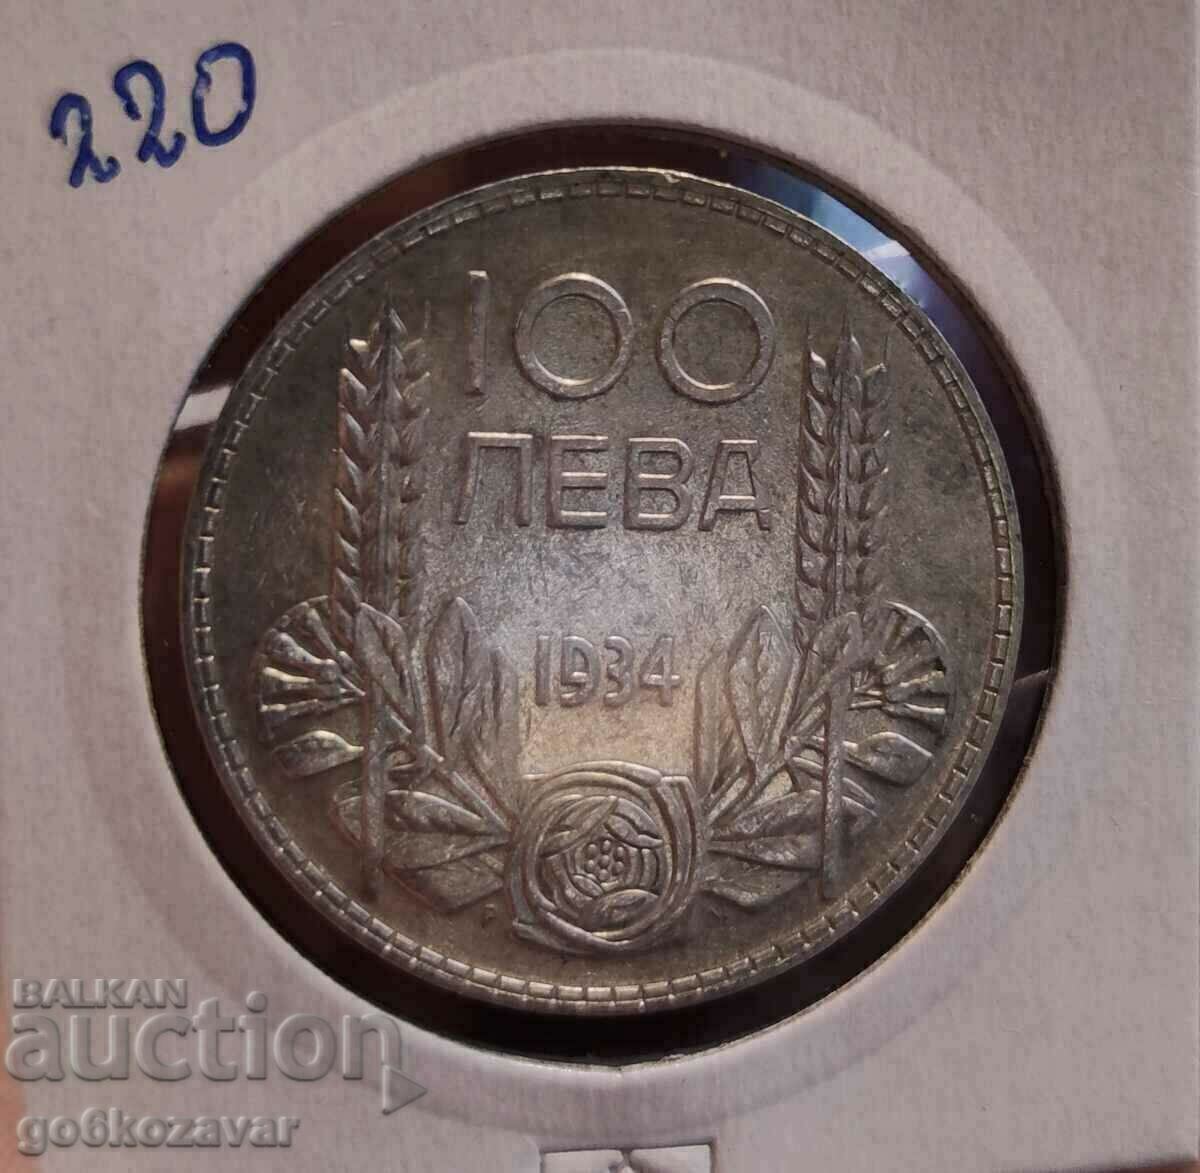 Bulgaria 100 BGN 1934 Silver. Nice coin for collection!